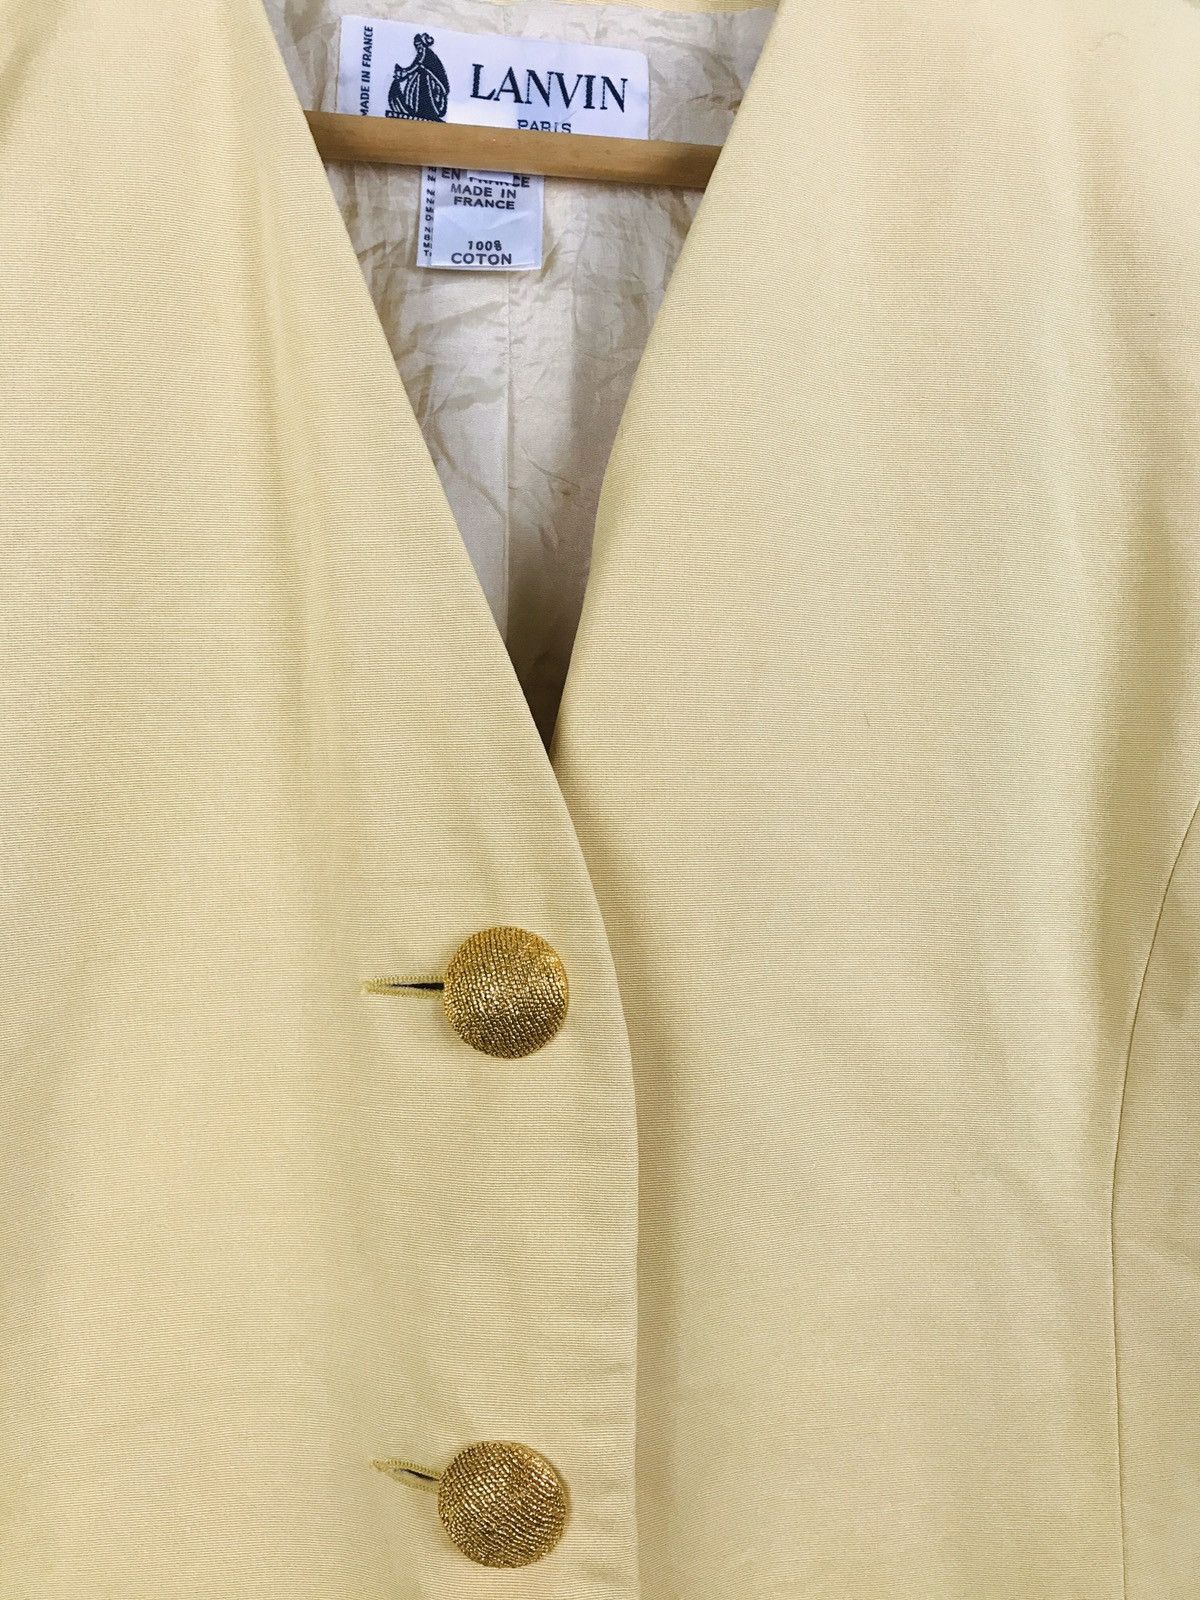 Lanvin Paris jacket with gold button - gh1519 - 3